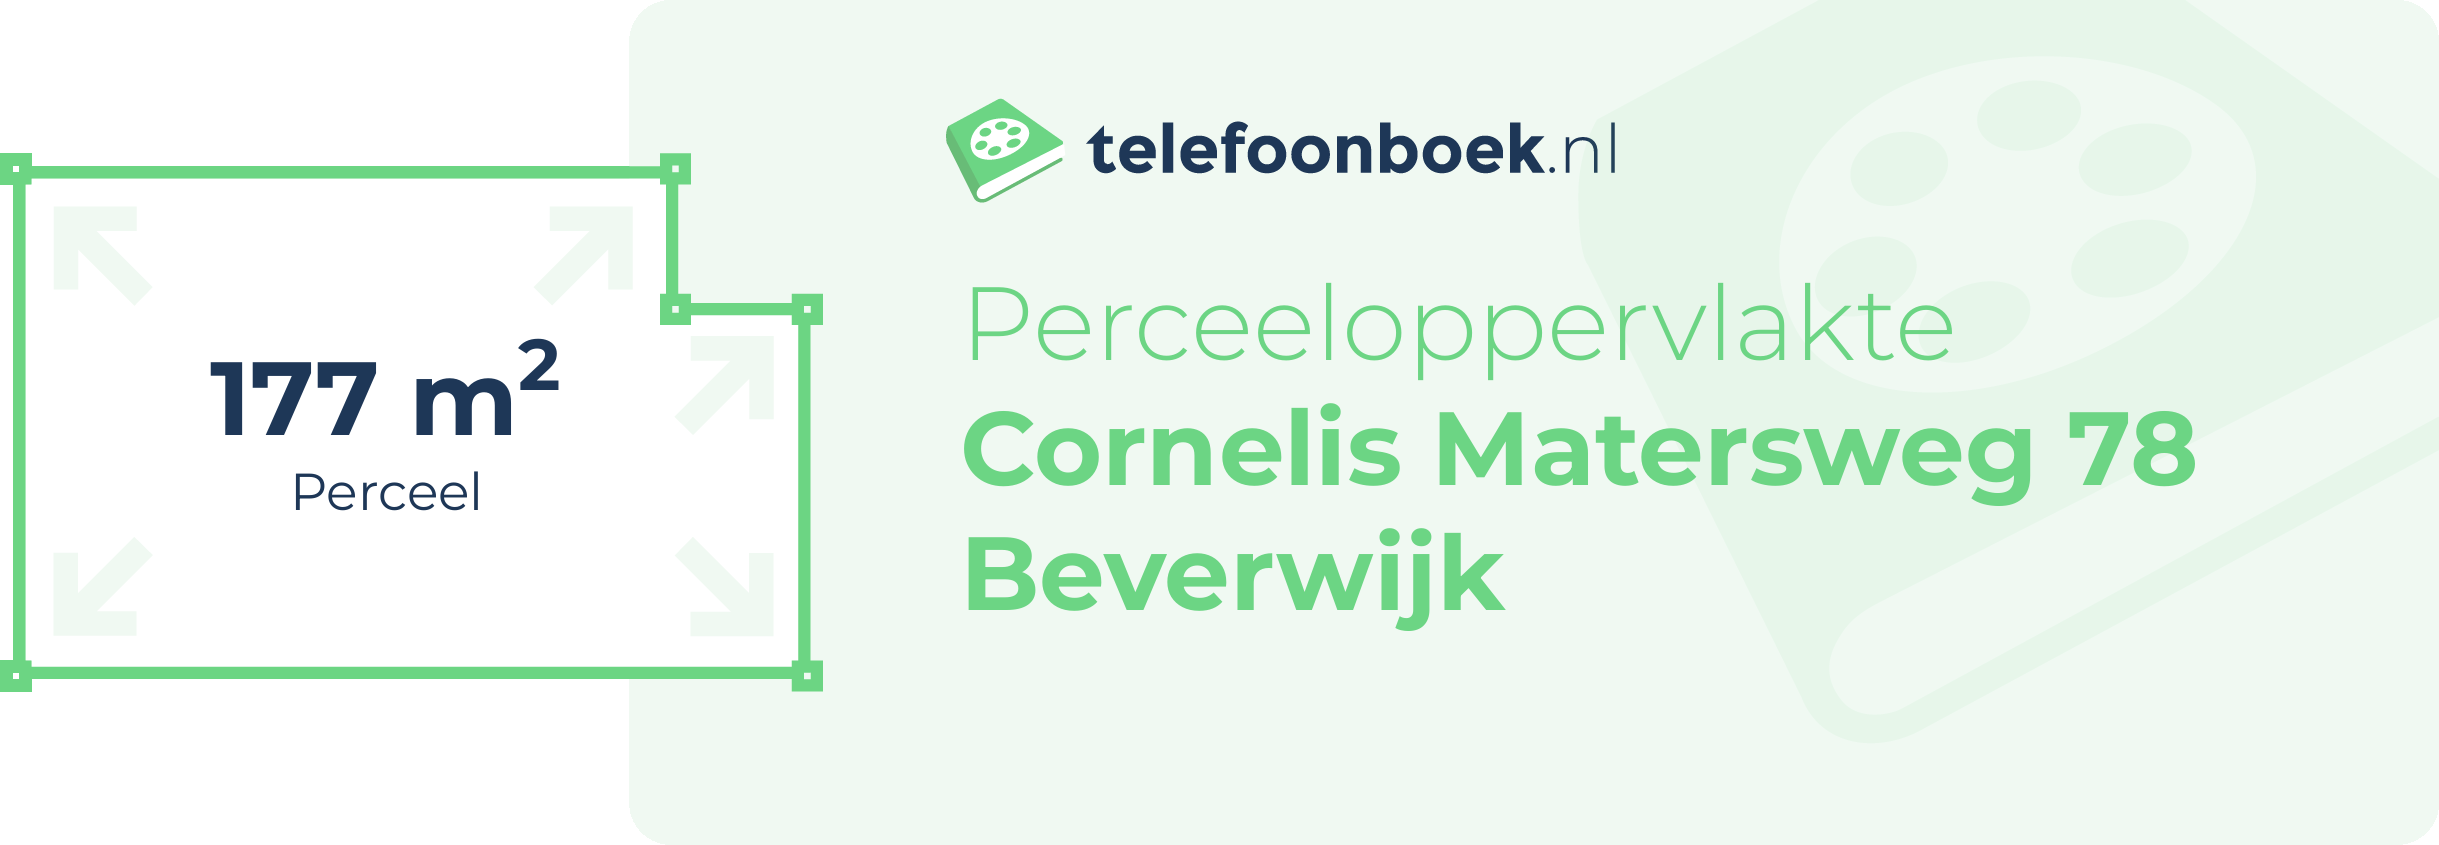 Perceeloppervlakte Cornelis Matersweg 78 Beverwijk